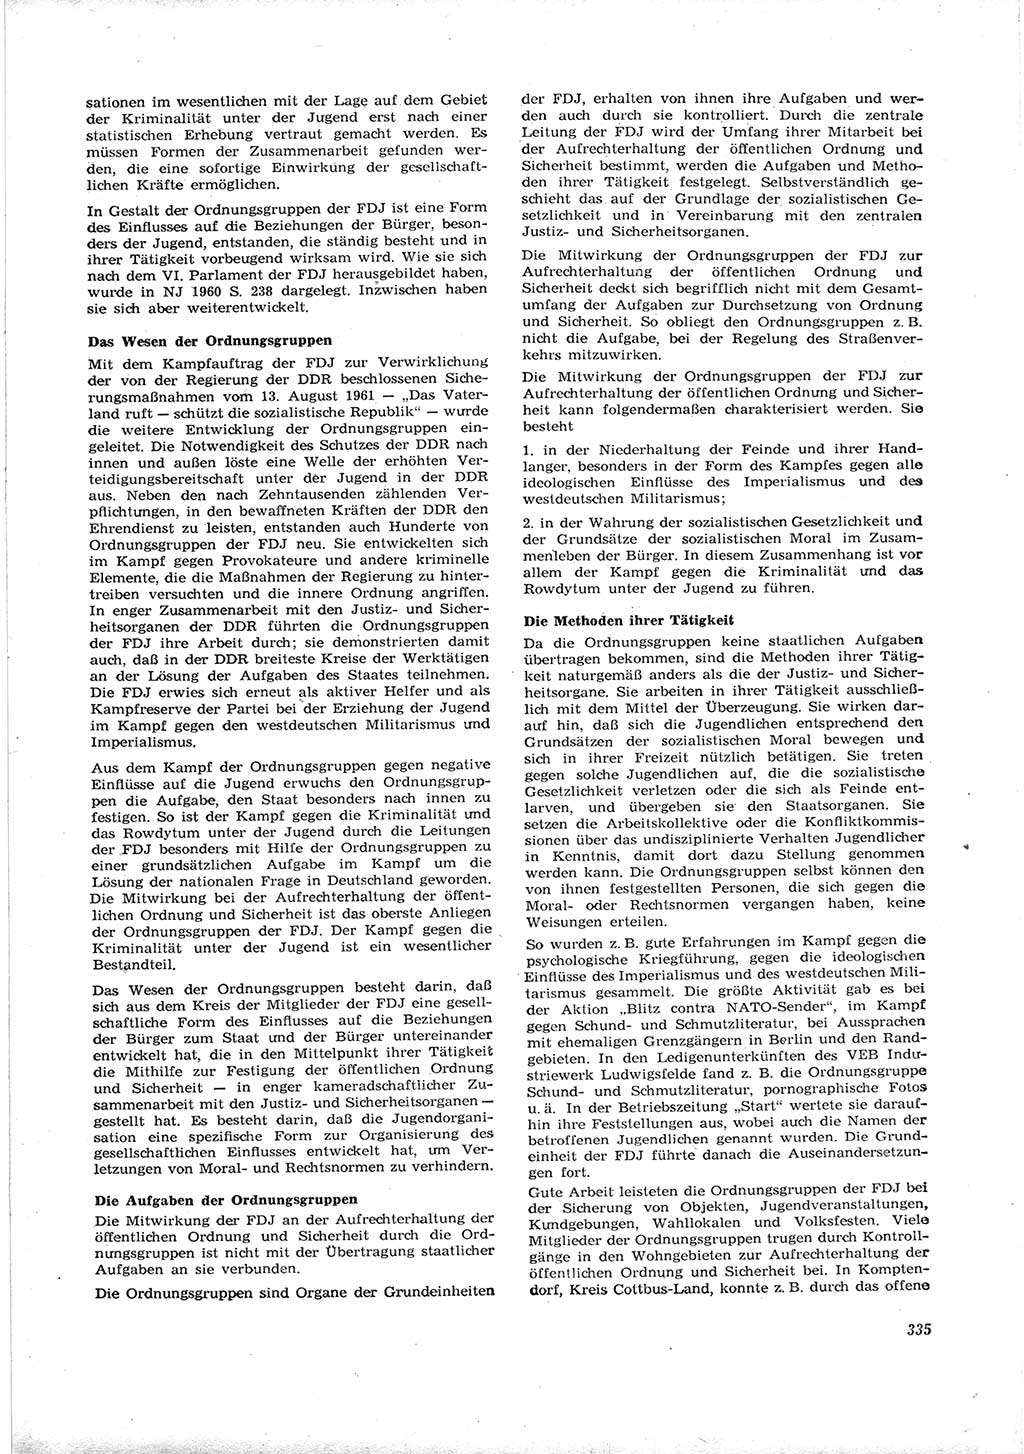 Neue Justiz (NJ), Zeitschrift für Recht und Rechtswissenschaft [Deutsche Demokratische Republik (DDR)], 16. Jahrgang 1962, Seite 335 (NJ DDR 1962, S. 335)